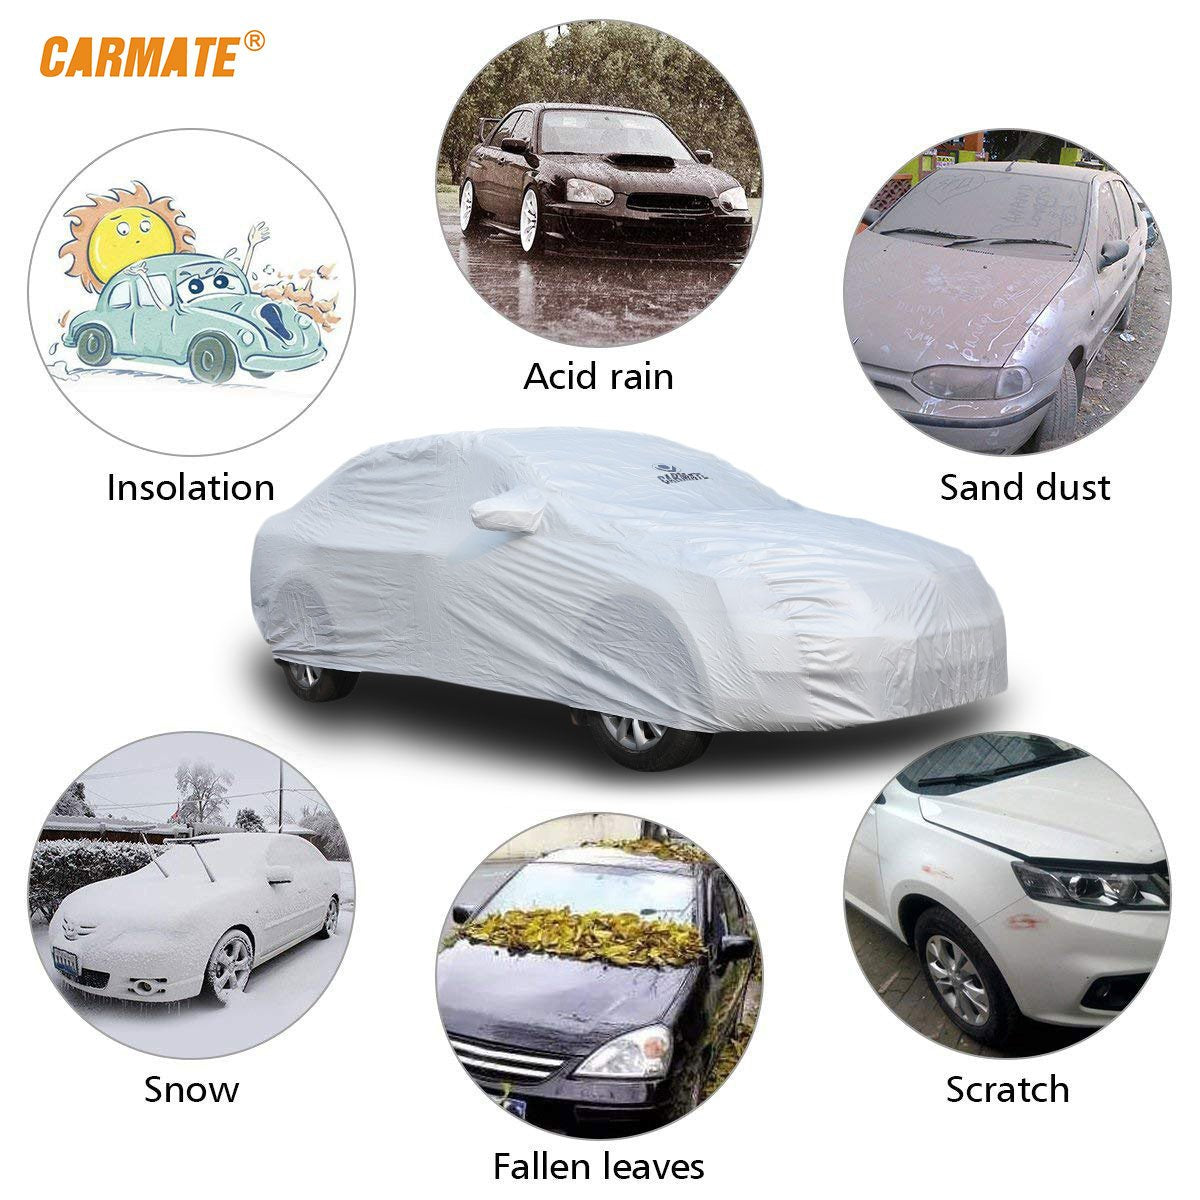 Carmate Premium Car Body Cover Silver Matty (Silver) for  Tata - Manza - CARMATE®